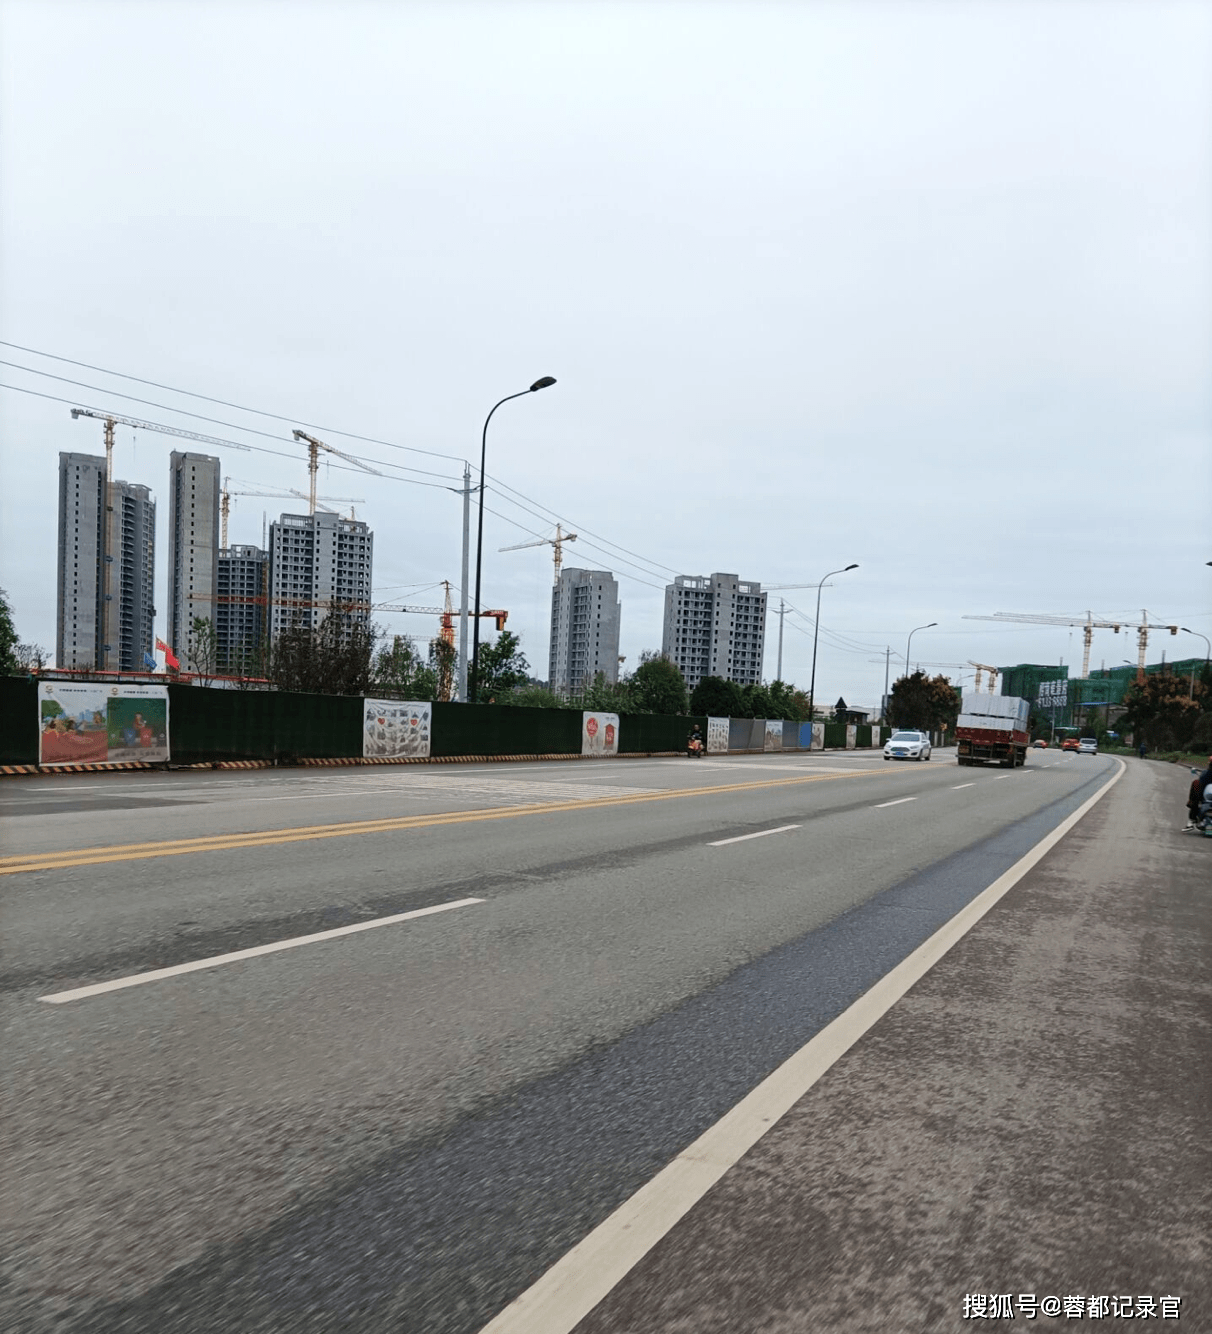 三木路连接着新都城区,三河街道,木兰,石板滩,如今的石板滩作为新都